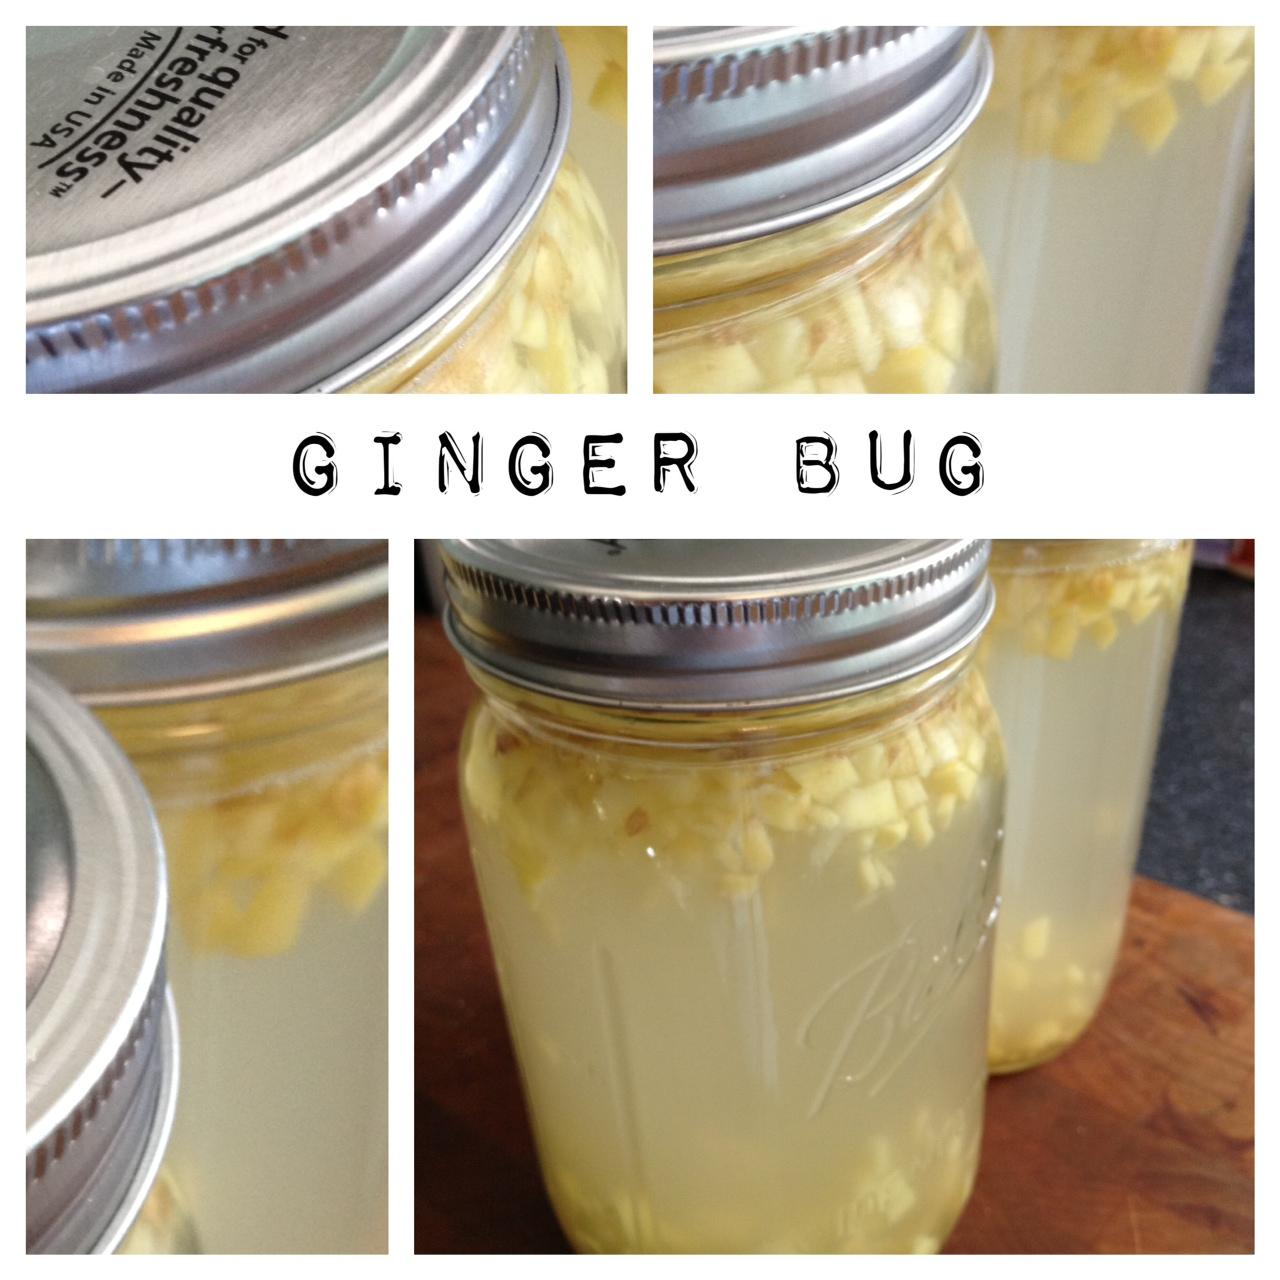 Ginger Bug